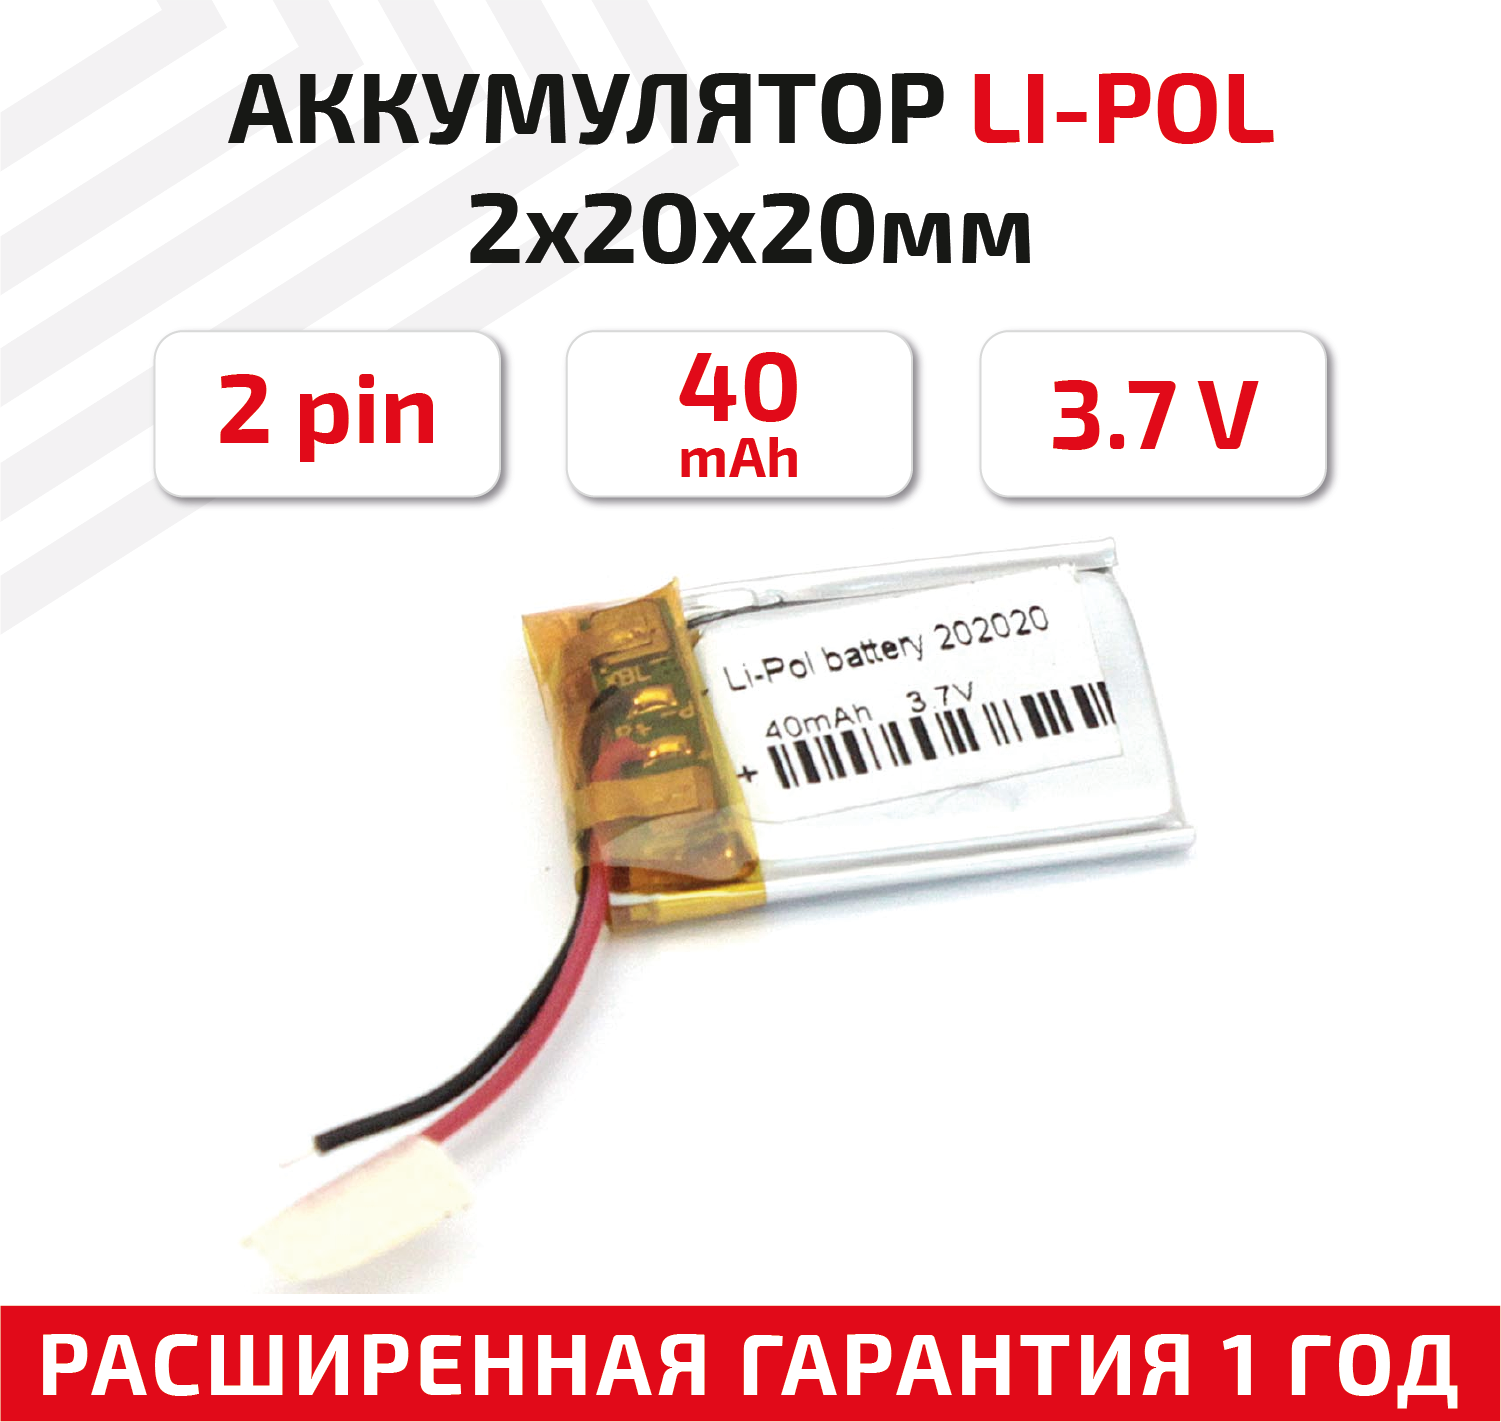 Универсальный аккумулятор (АКБ) для планшета, видеорегистратора и др, 2х20х20мм, 40мАч, 3.7В, Li-Pol, 2pin (на 2 провода)